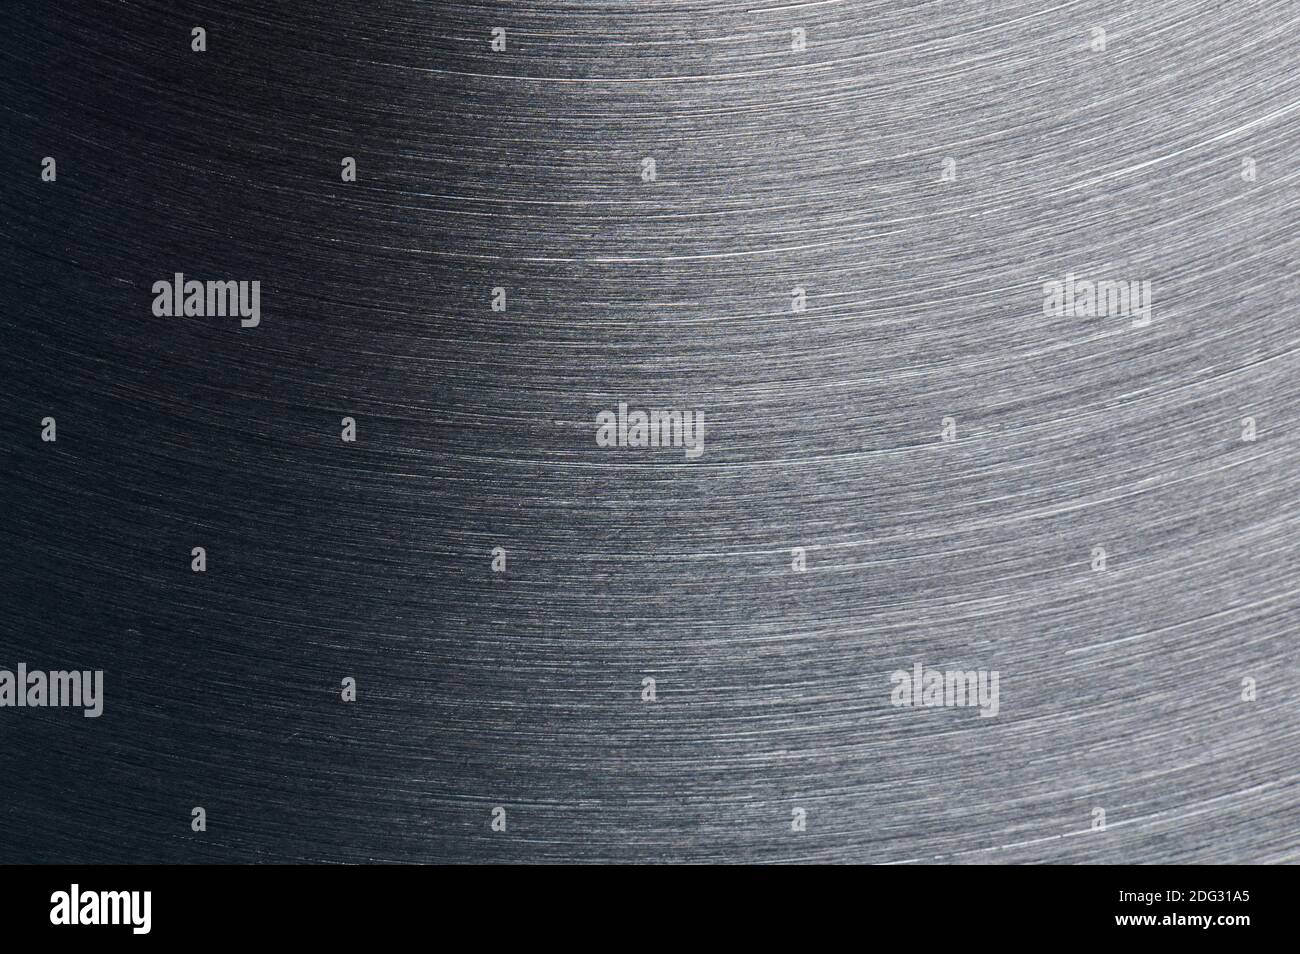 Vue macro de la surface en métal brossé gris propre Banque D'Images